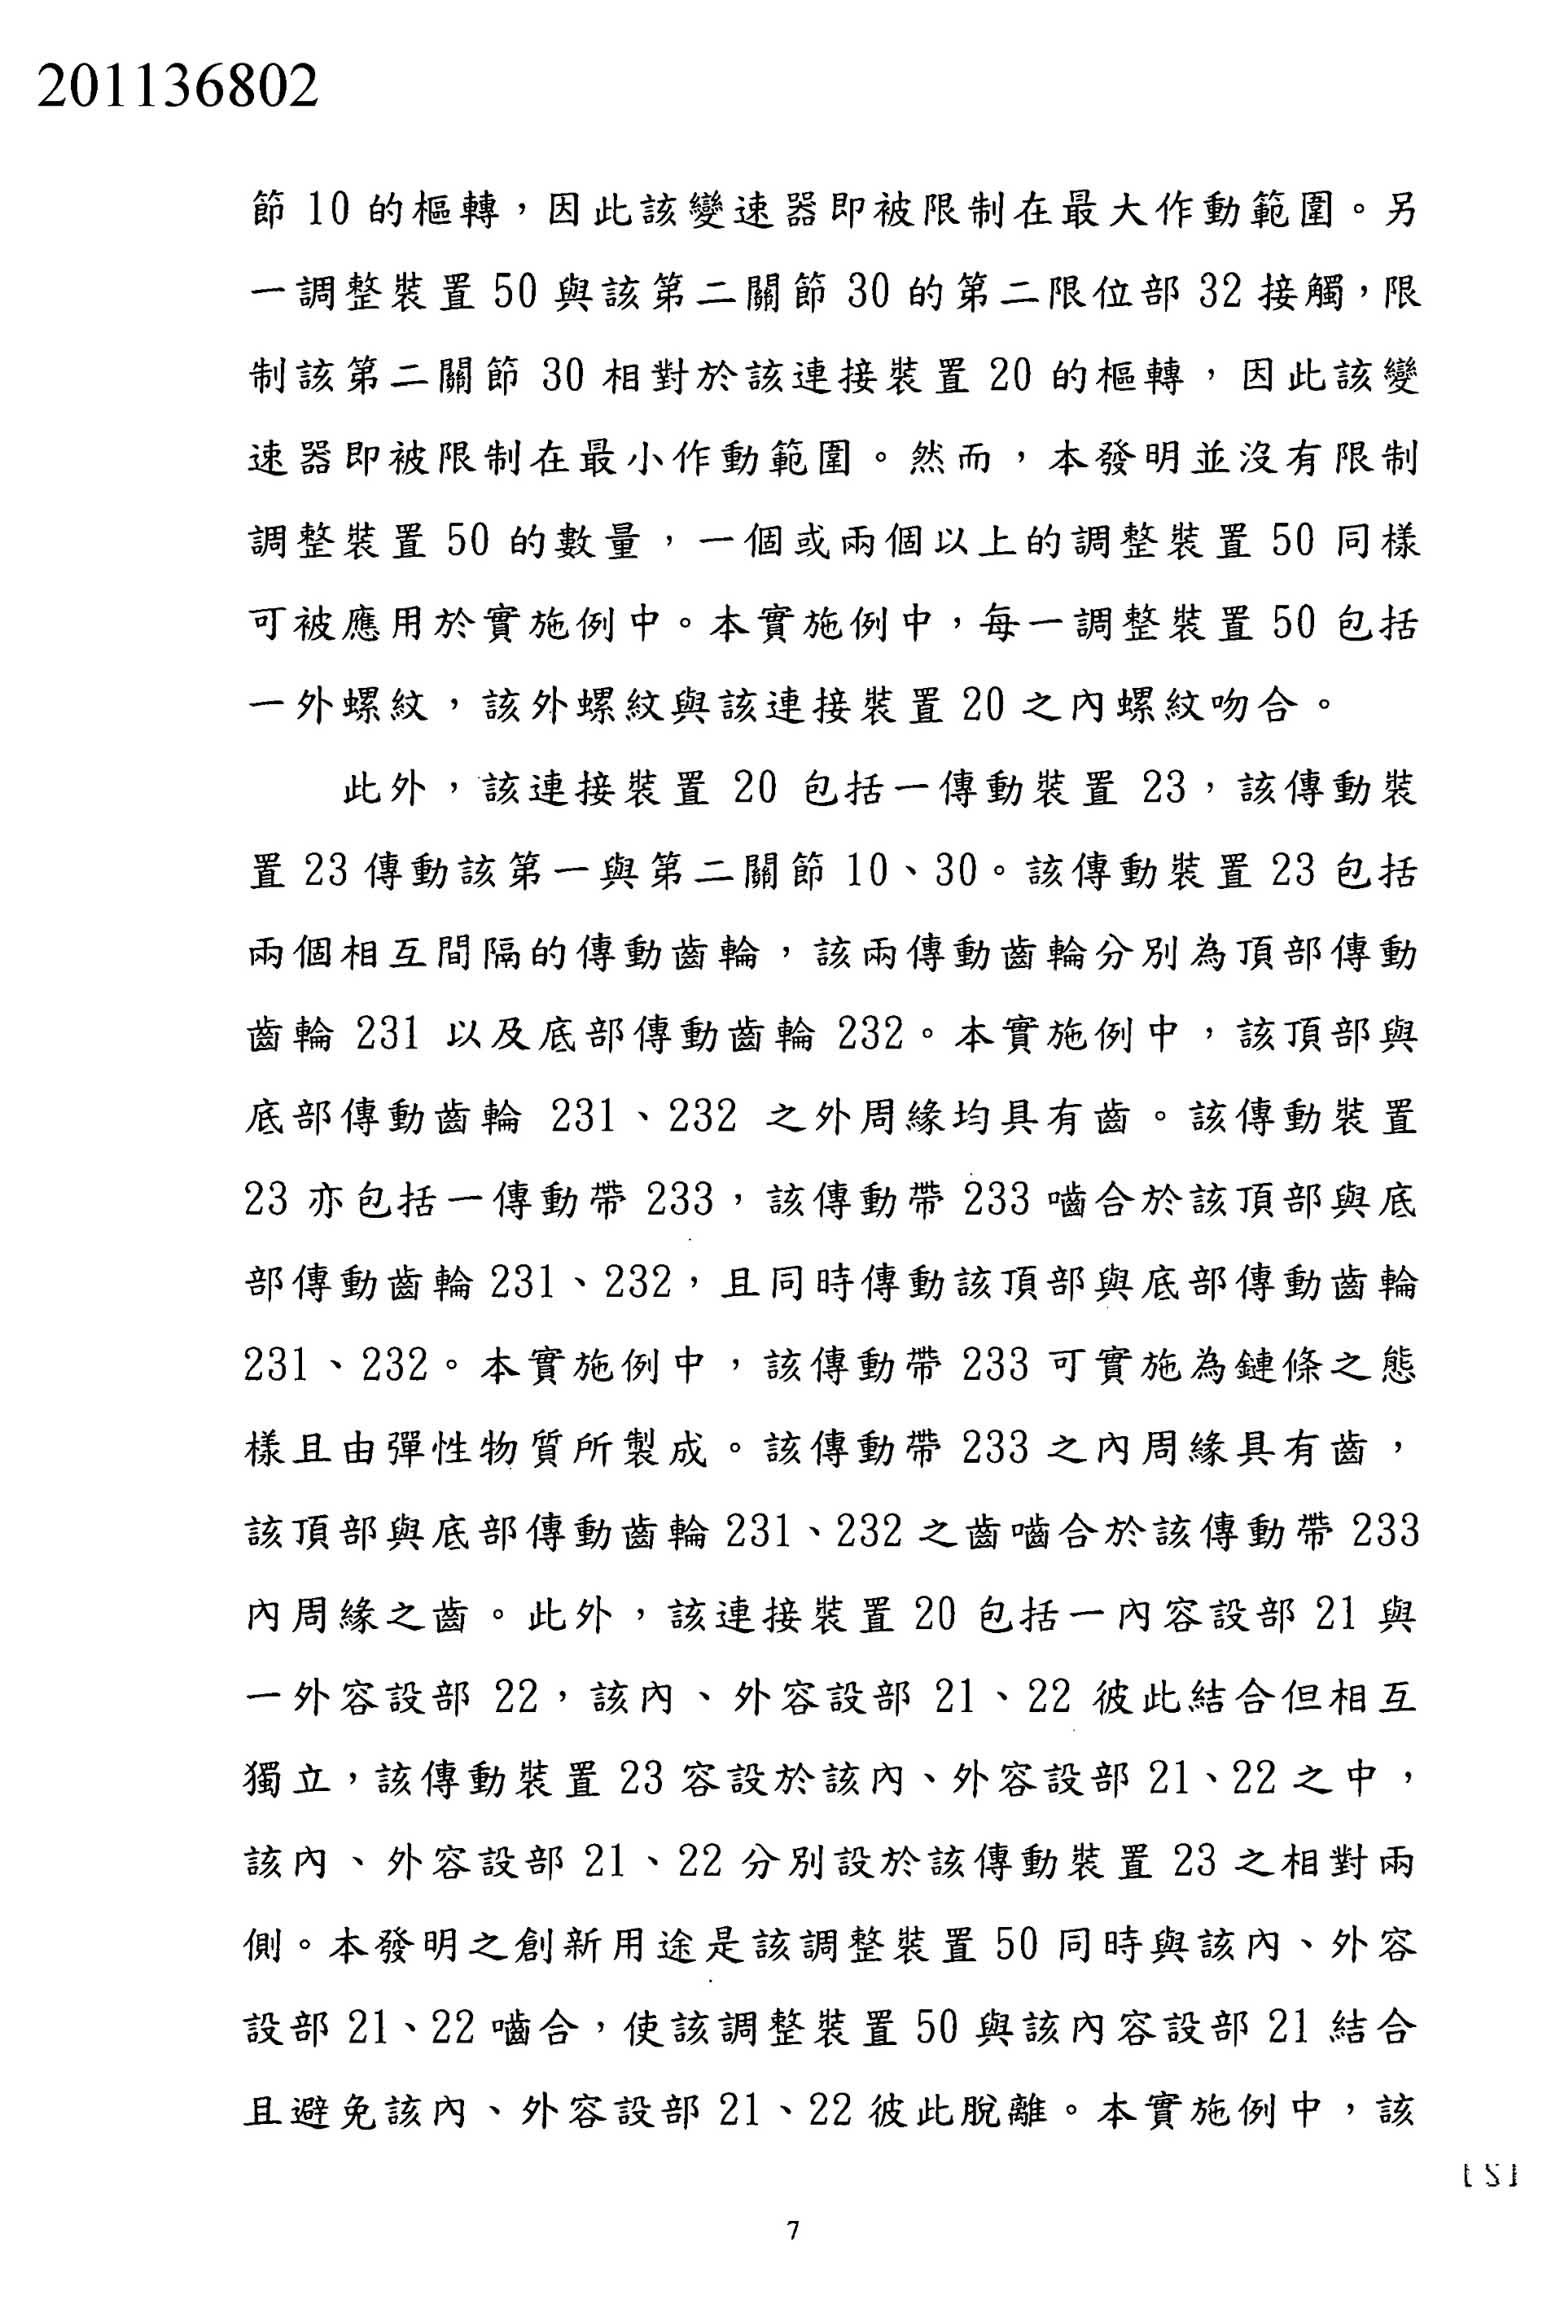 Taiwanese patent 201136802 - FSA scan 6 main image